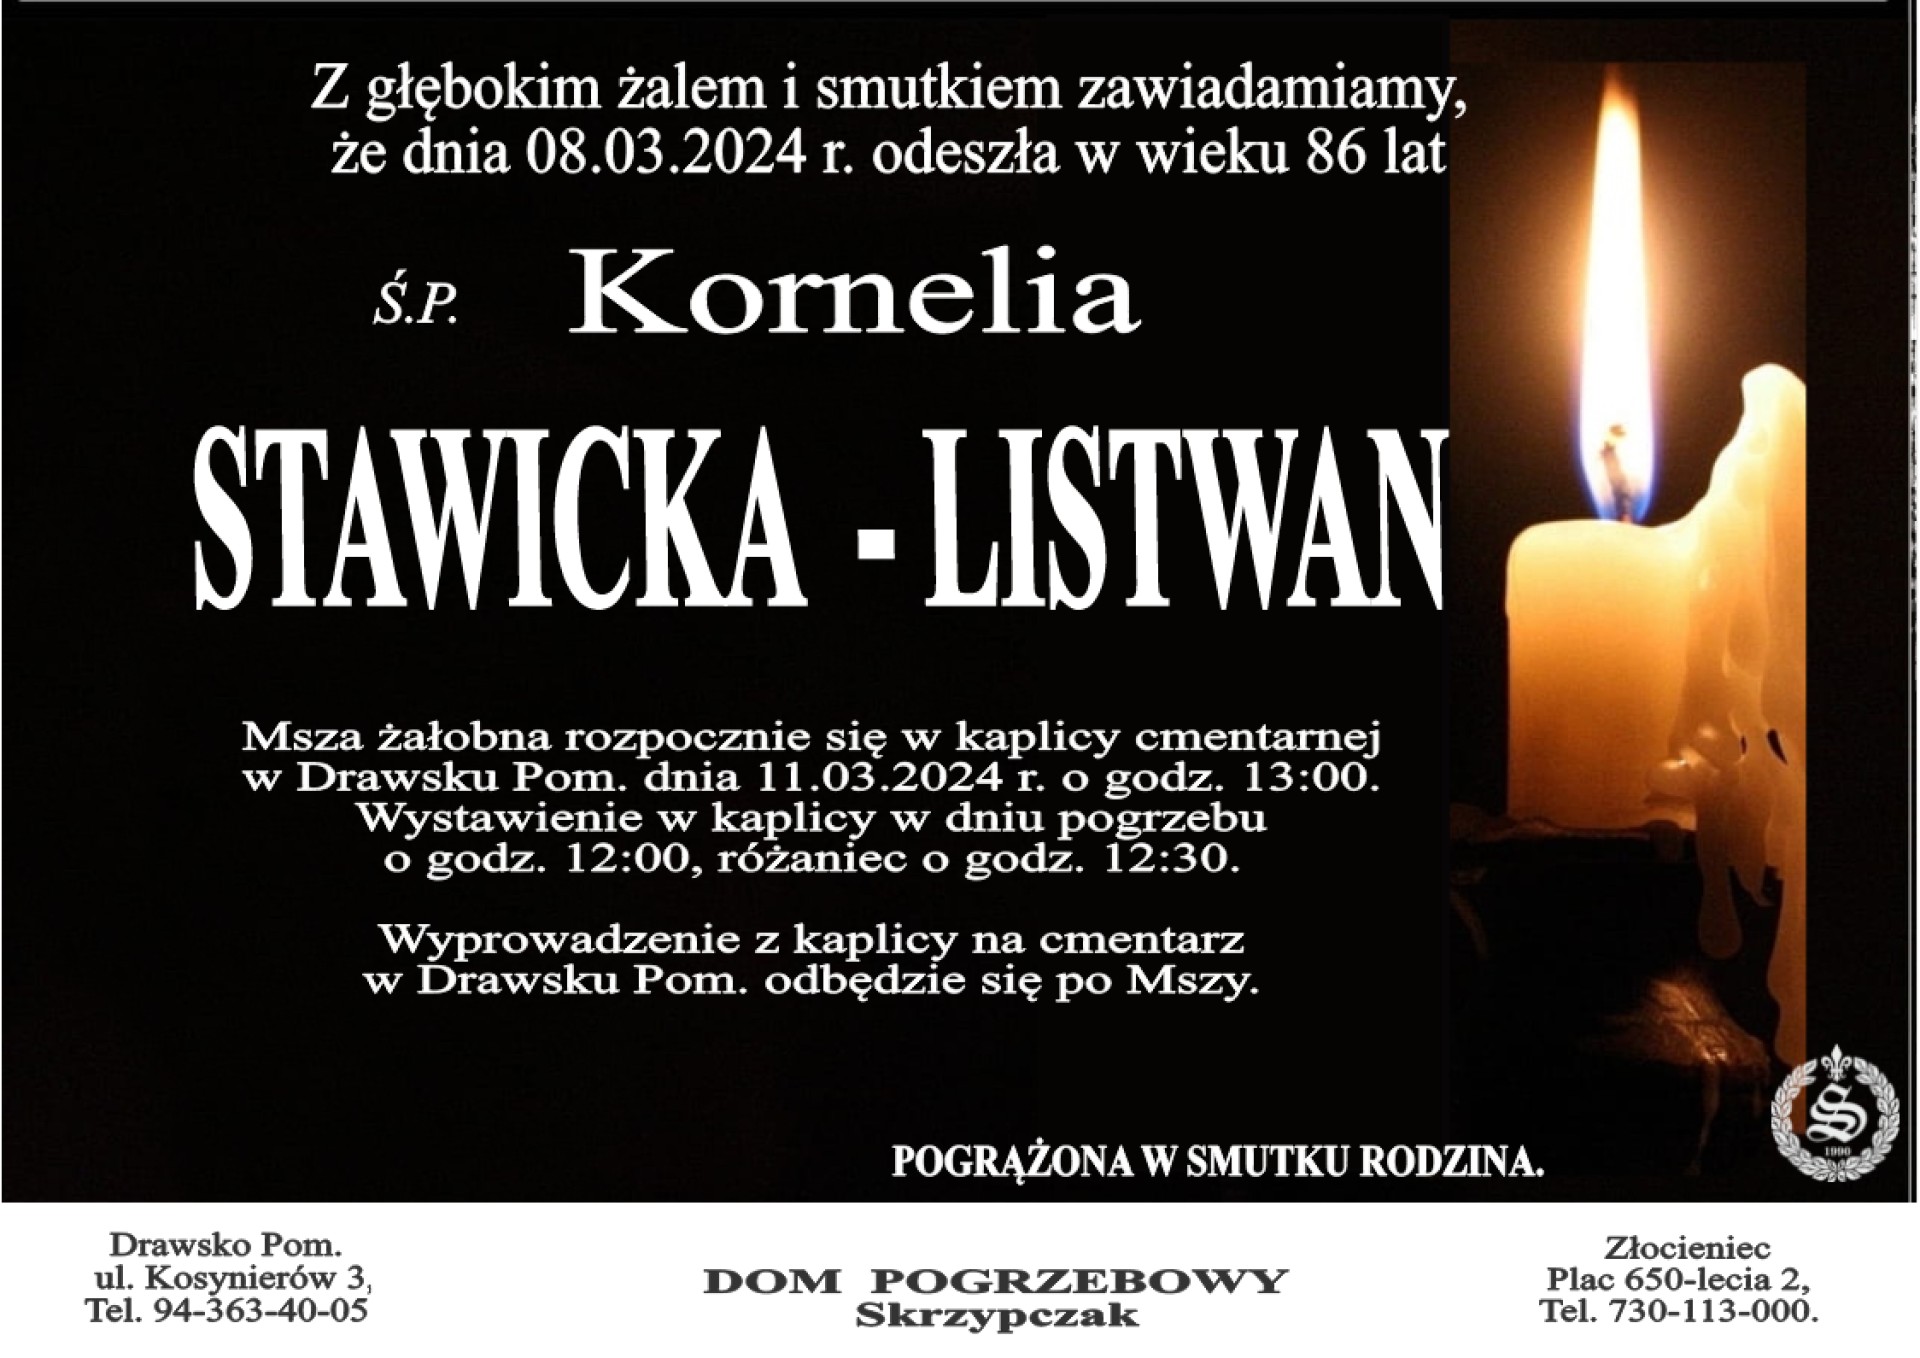 Ś. P. Kornelia Stawicka - Listwan